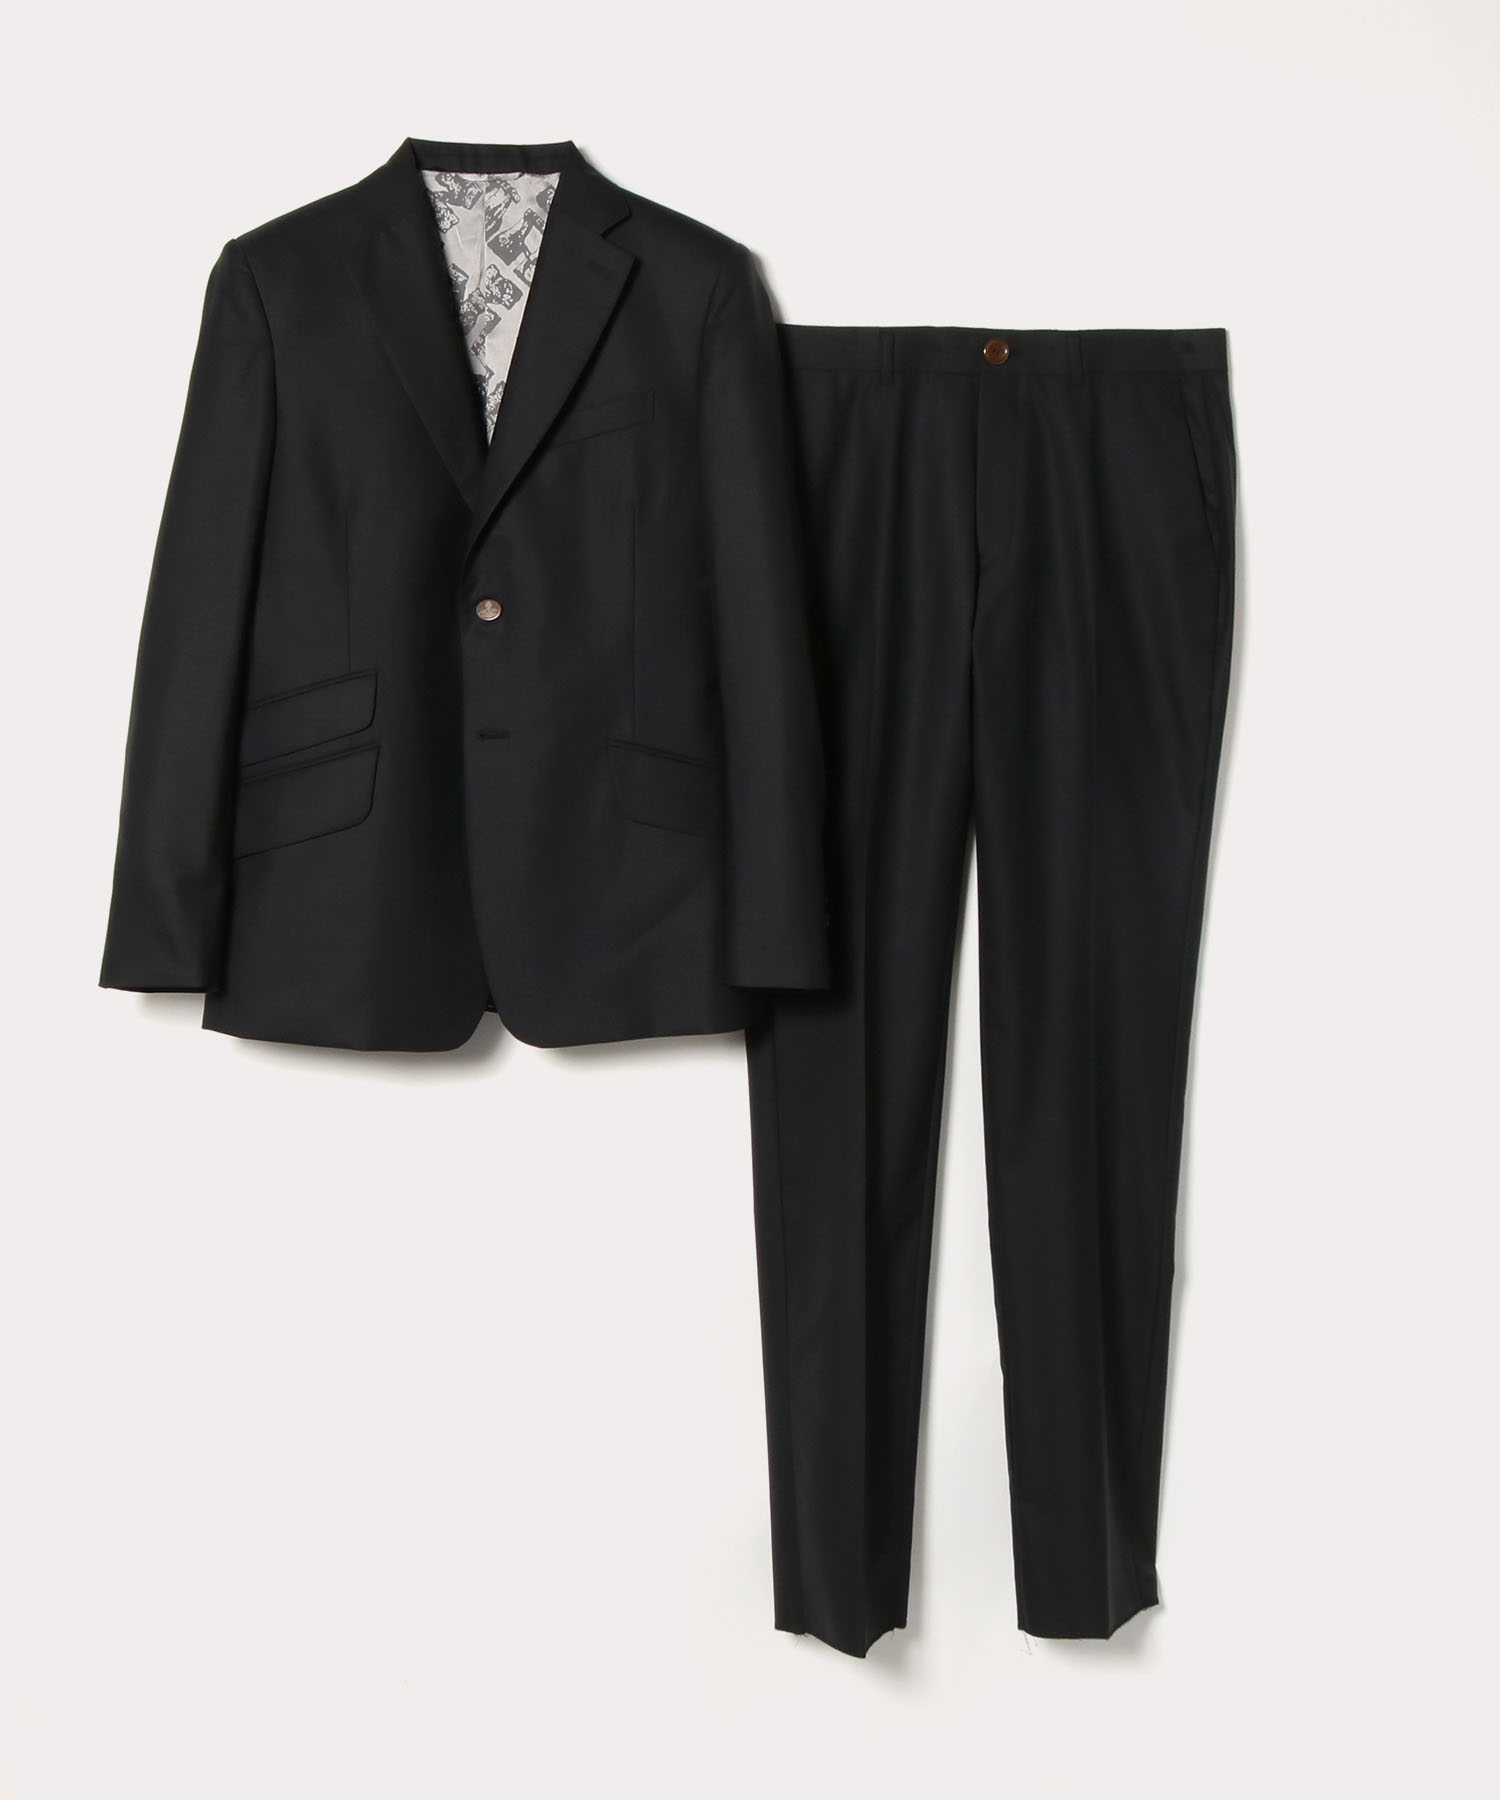 クラシック スーツ ブラック メンズ 公式通販 ヴィヴィアン ウエストウッド Vivienne Westwood